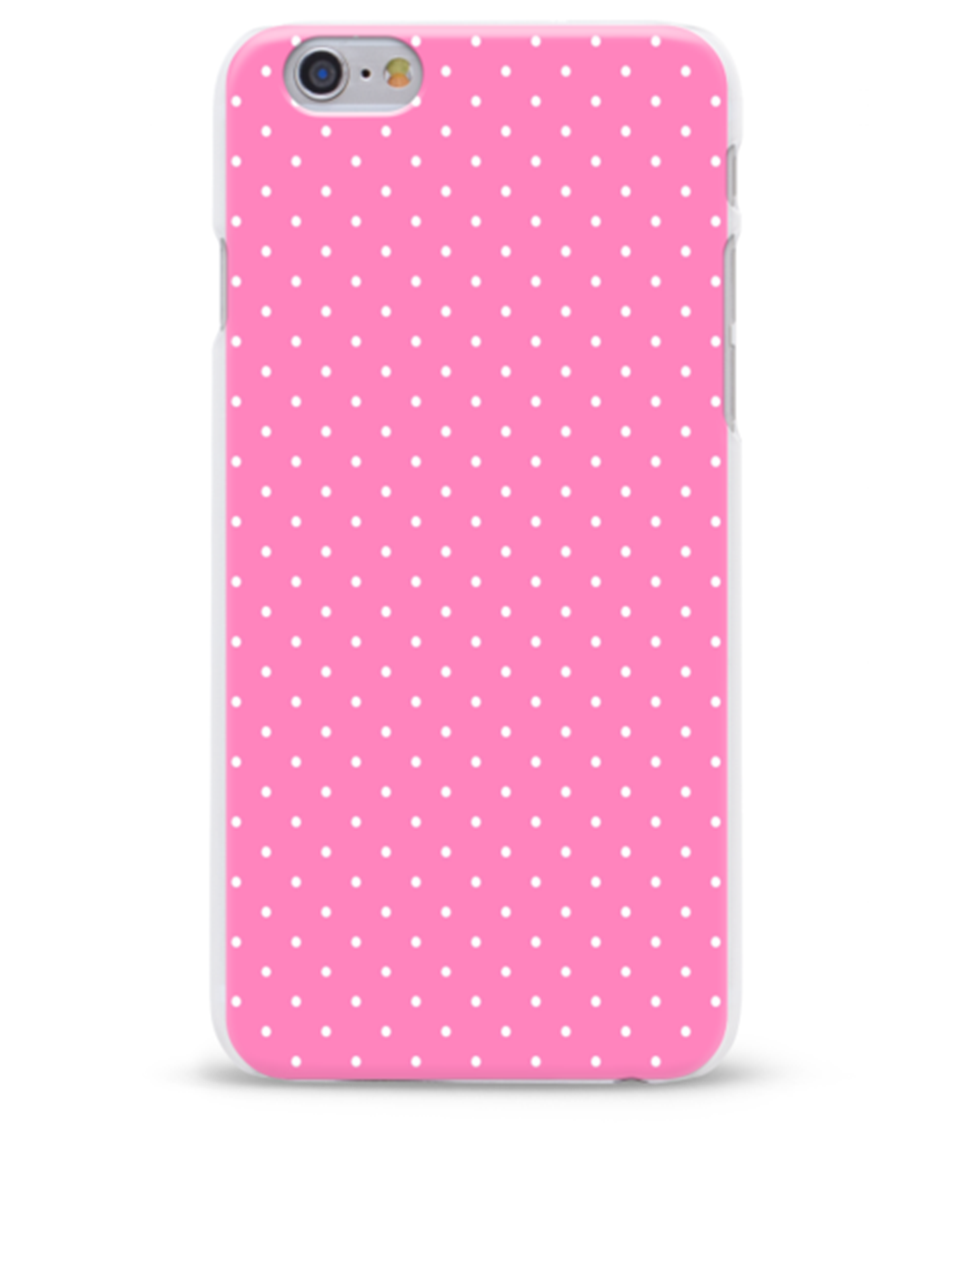 Růžový ochranný kryt s puntíky na iPhone 6/6S Epico Dots pastel pink